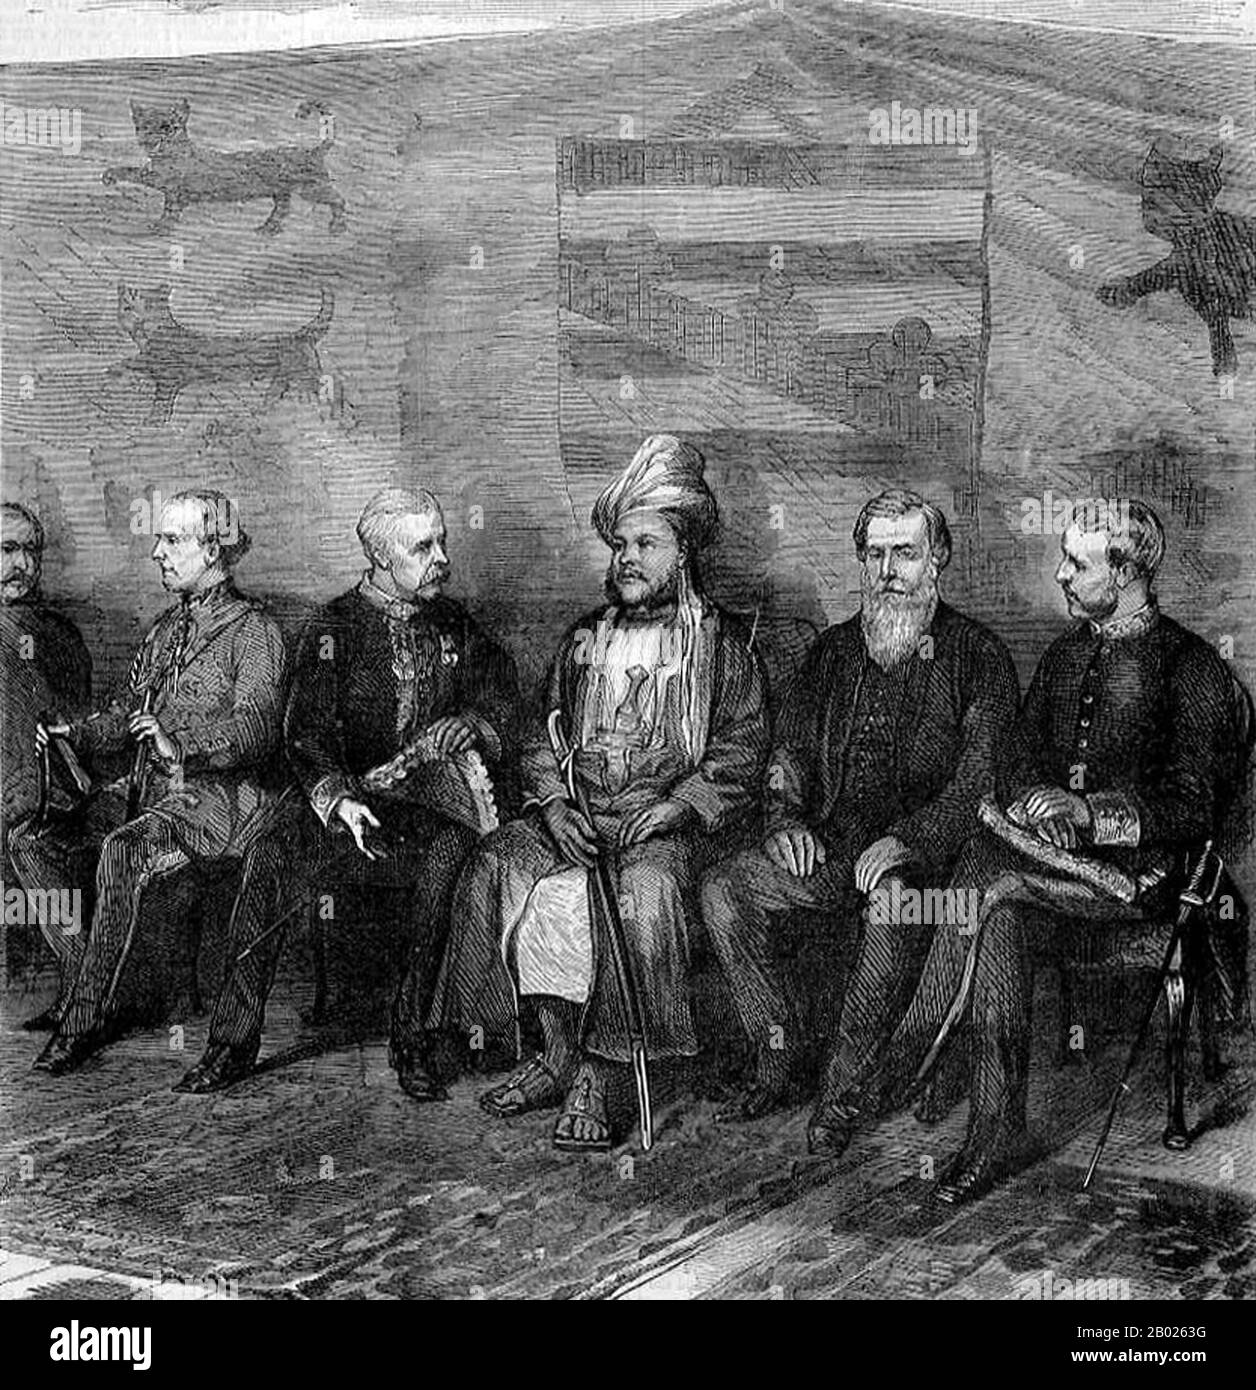 Sayyid Barghash bin Sagte Al-Busaid, GCMG, GCTE (1837 - 26. März 1888) (arabisch: برغش بن سعيد البوسعيد‎), Sohn Von Said bin Sultan, war der zweite Sultan von Sansibar. Barghash regierte Sansibar vom 7. Oktober 1870 bis zum 26. März 1888. Sir Henry Bartle Edward Frere, 1st Baronet, GCB, GCSI, (29. März 1815 - 29. Mai 1884) war ein britischer Kolonialverwalter. Im Jahr 1872 schickte ihn das Auswärtige Amt nach Sansibar, um einen Vertrag mit dem Sultan auszuhandeln, sagte Barghash bin zur Unterdrückung des Sklavenverkehrs. Stockfoto